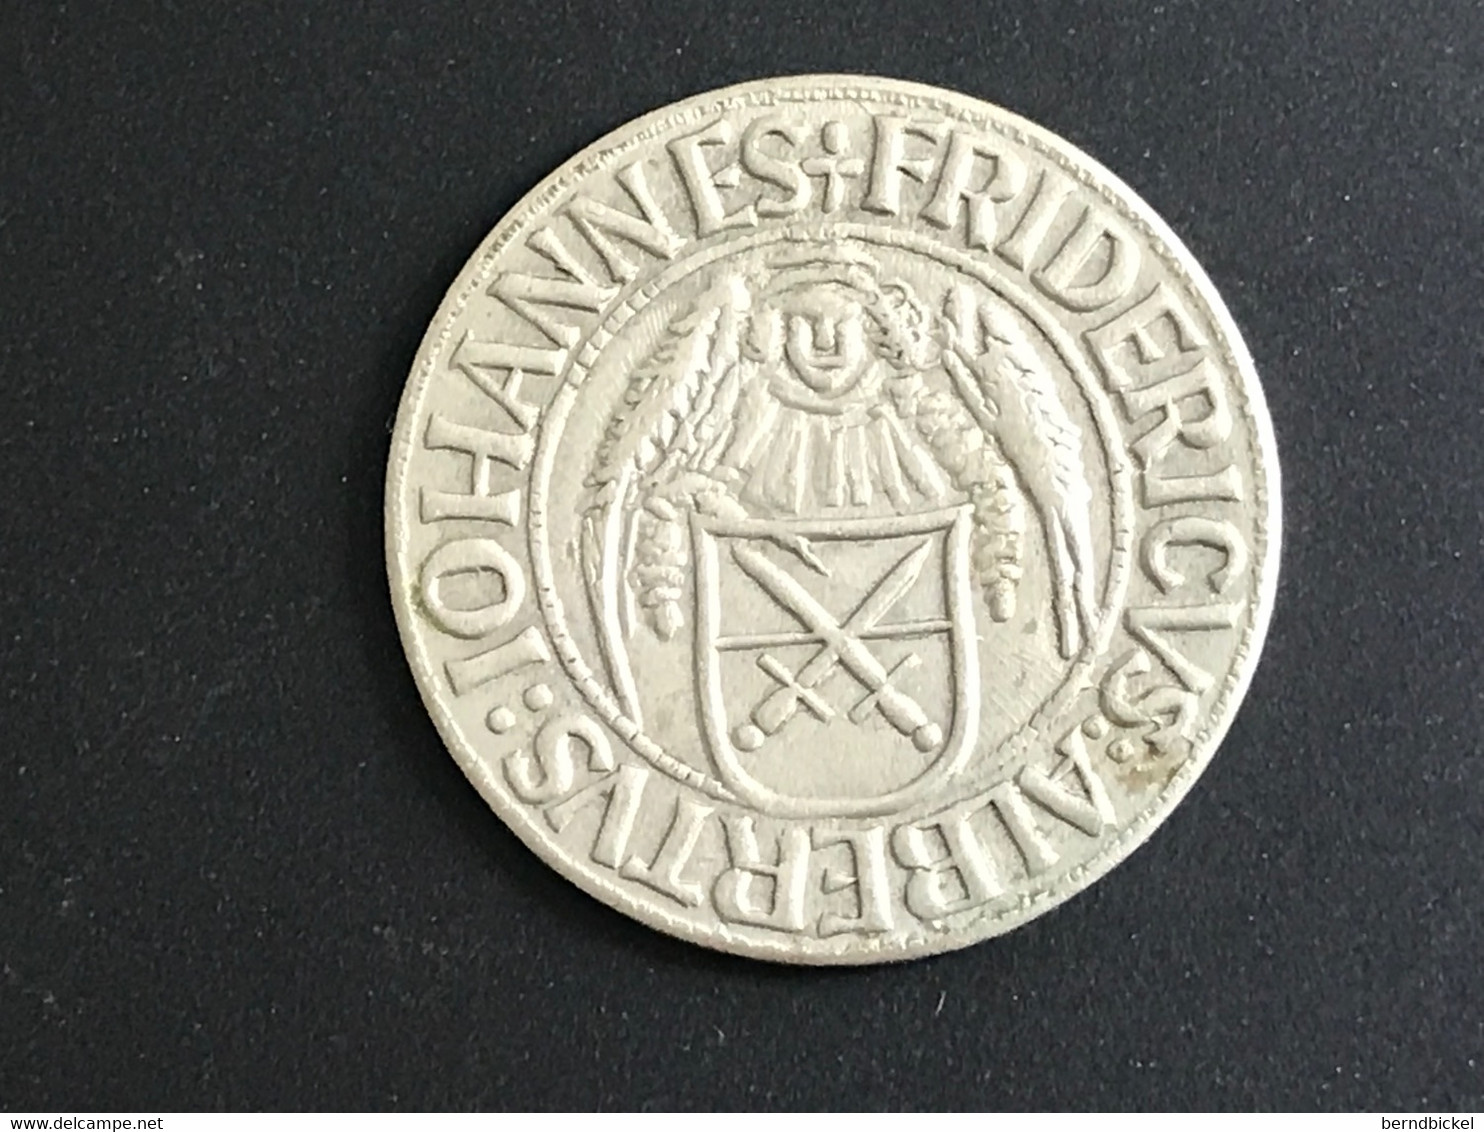 Münze Medaille Frohnauer Hammer 1436 - Profesionales/De Sociedad